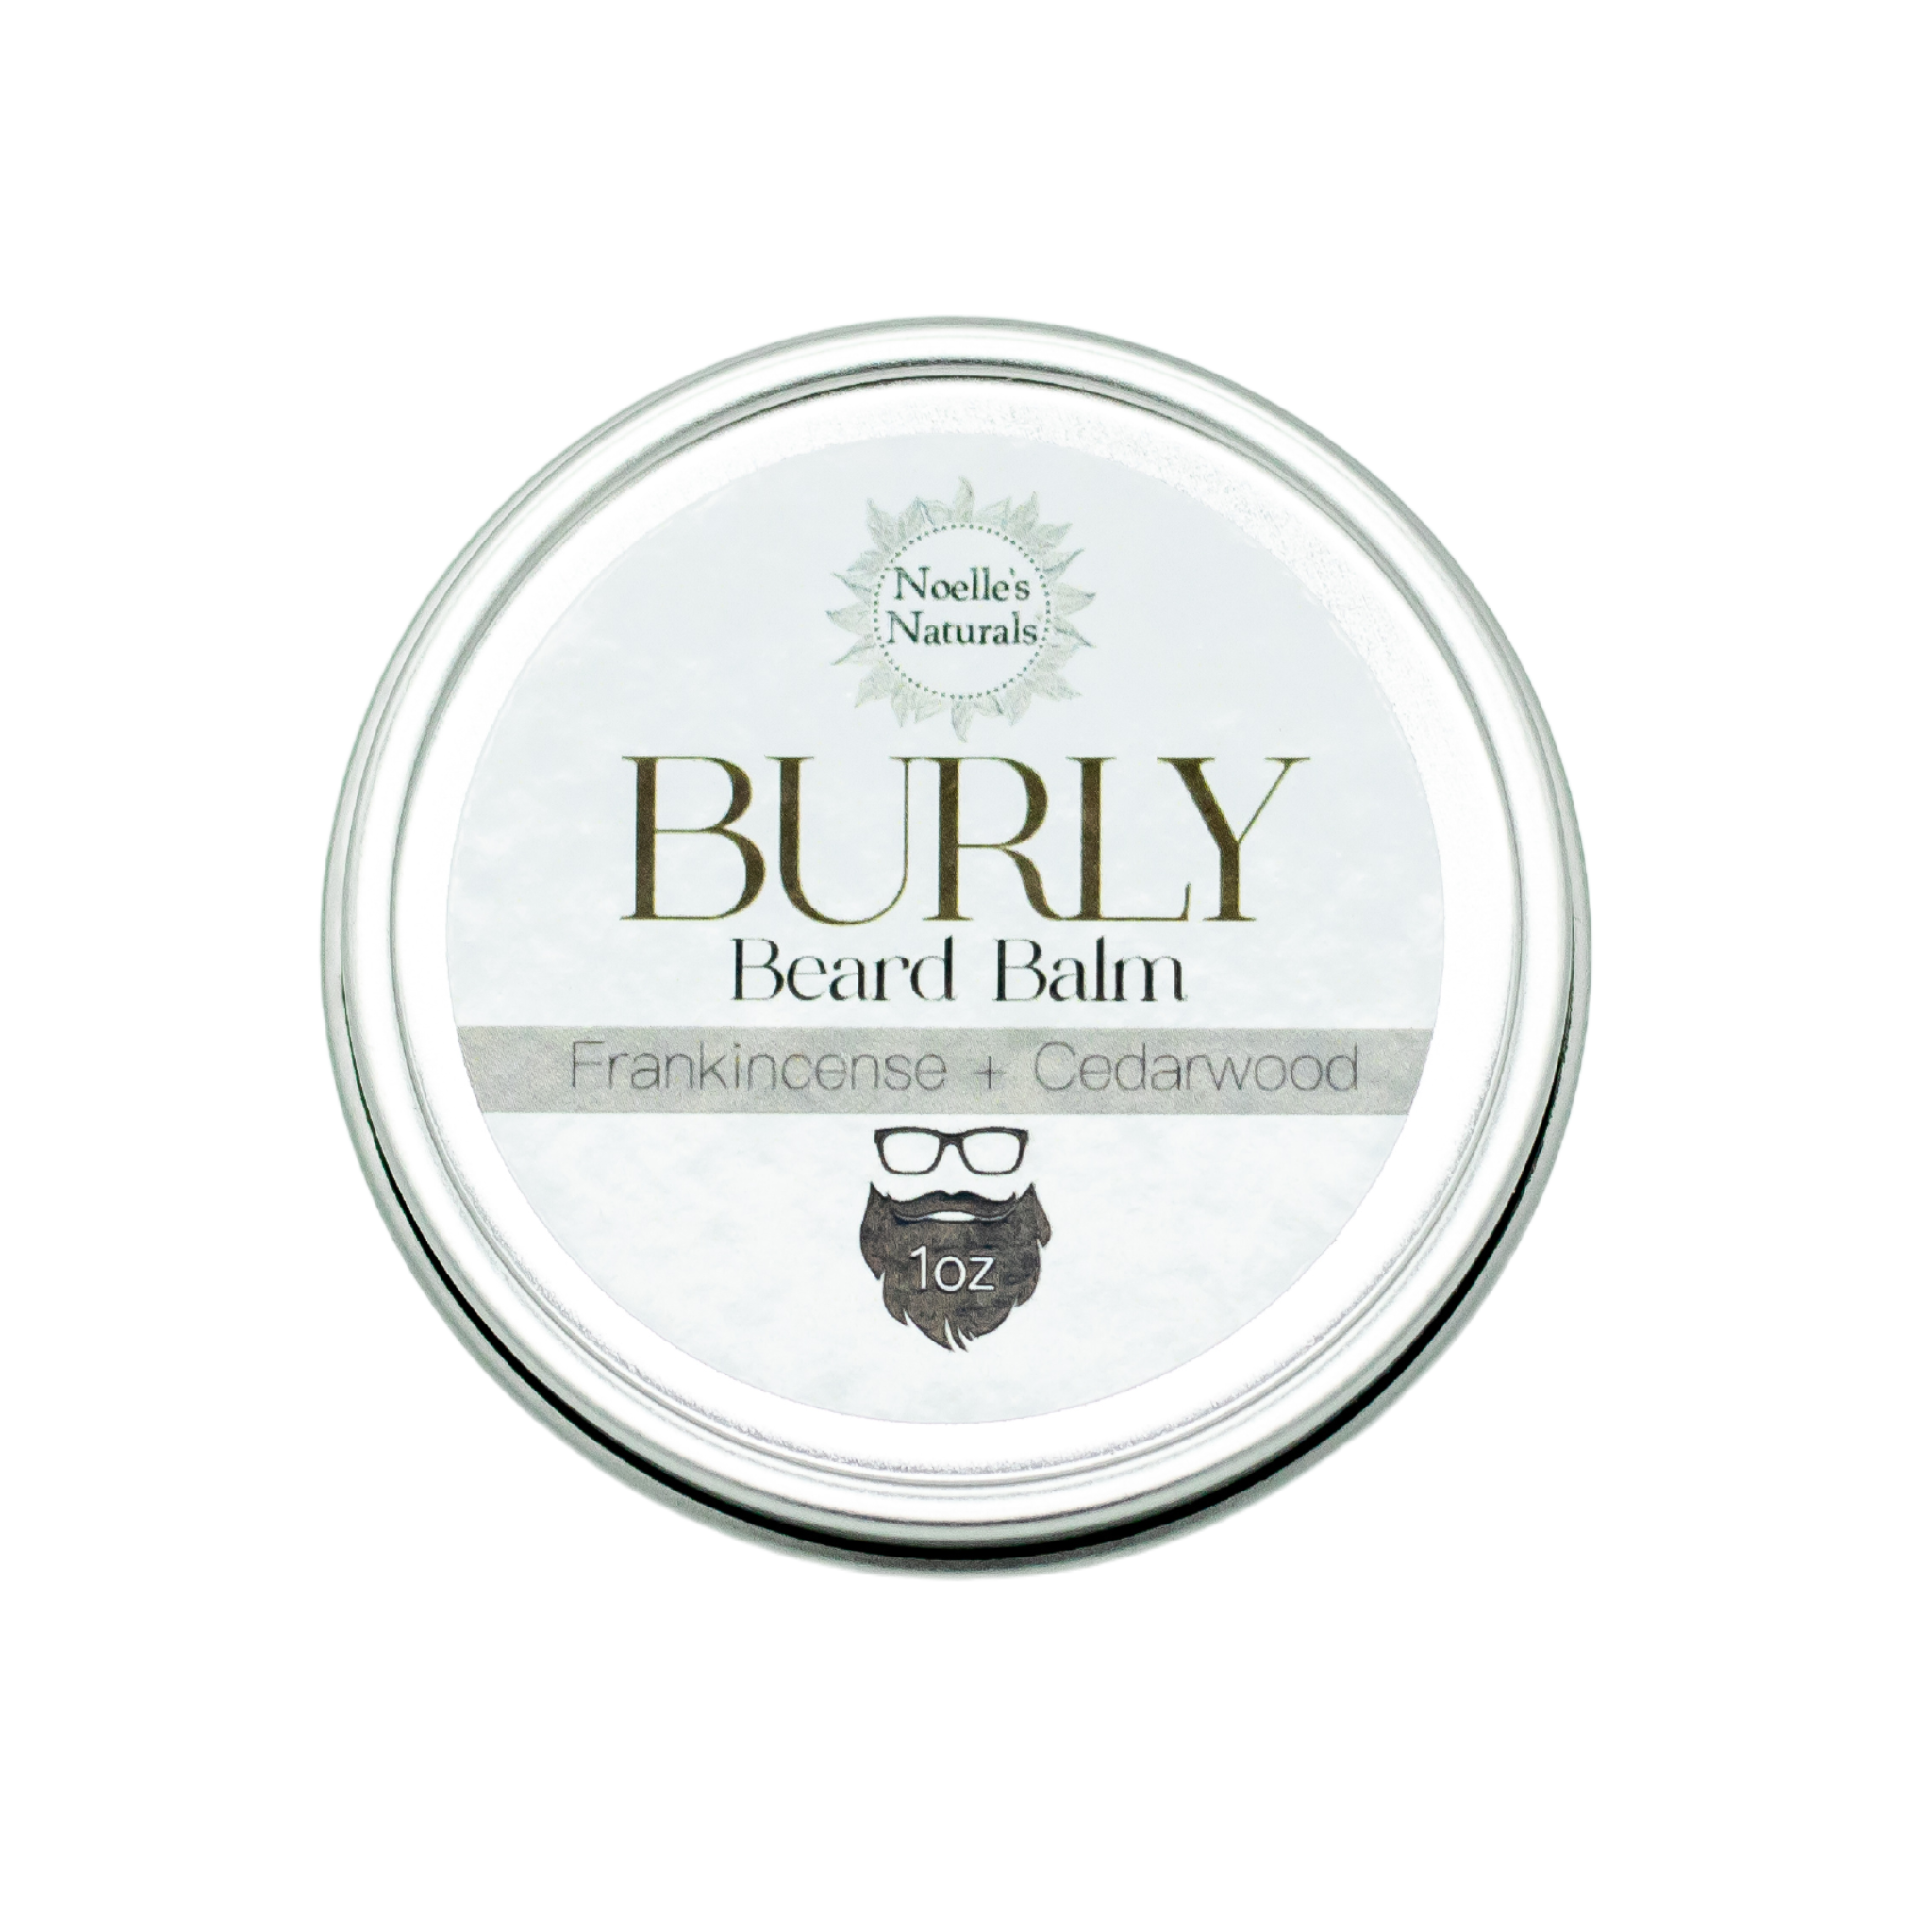 Burly Beard Balm